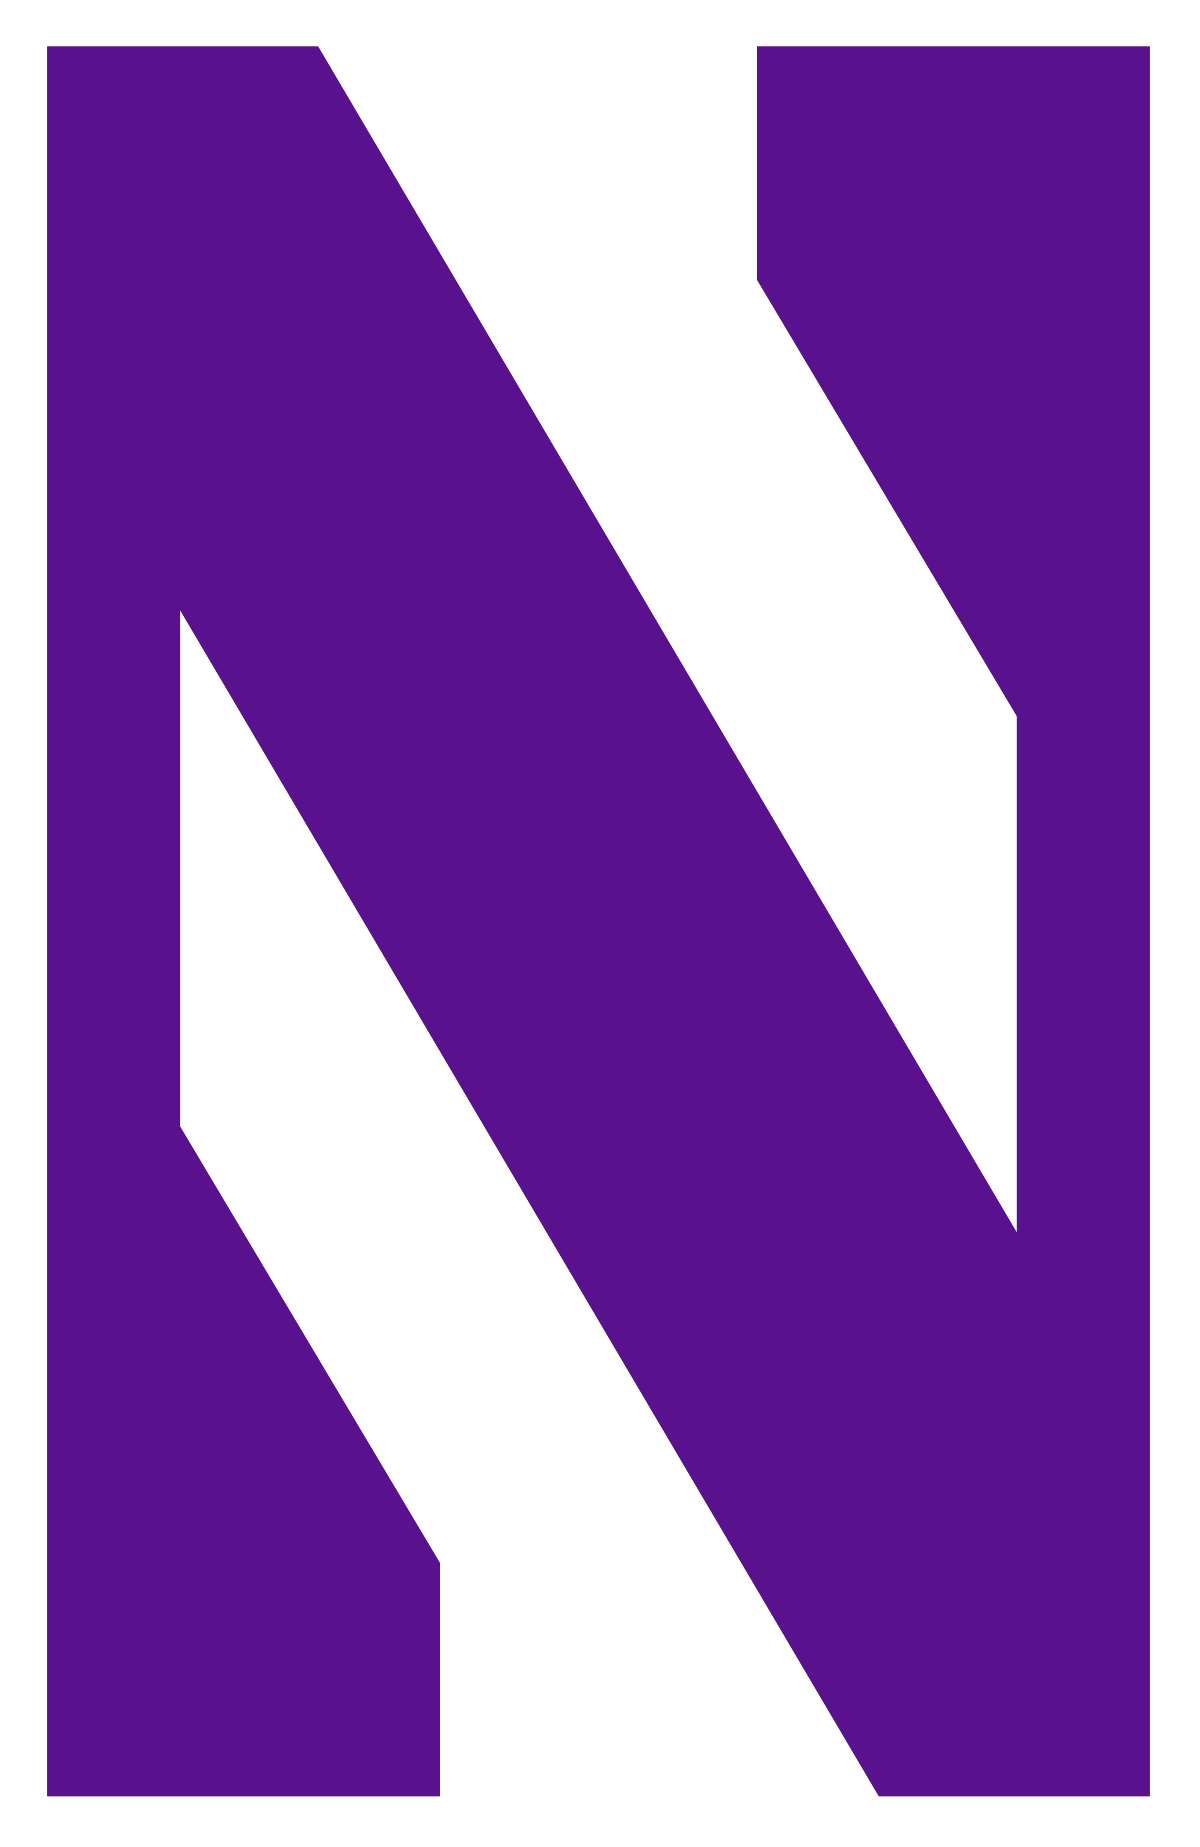 1200px-Northwestern_Wildcats_logo.svg